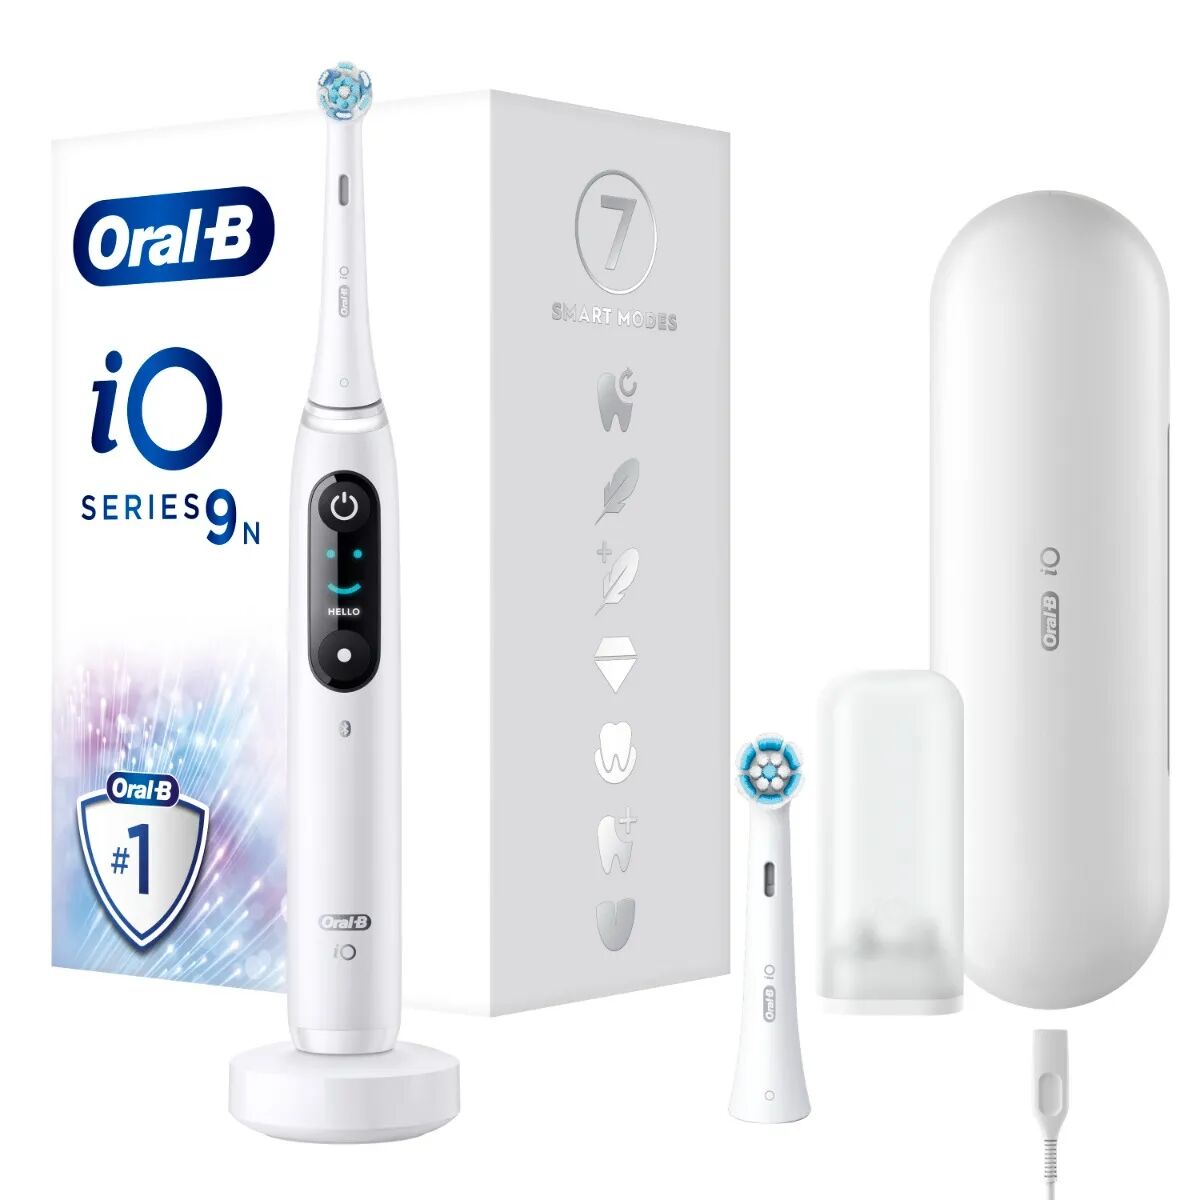 oral-b spazzolino elettrico ricaricabile io 9s bianco, 2 testine, 1 custodia da viaggio ricaricabile, 1 spazzolino